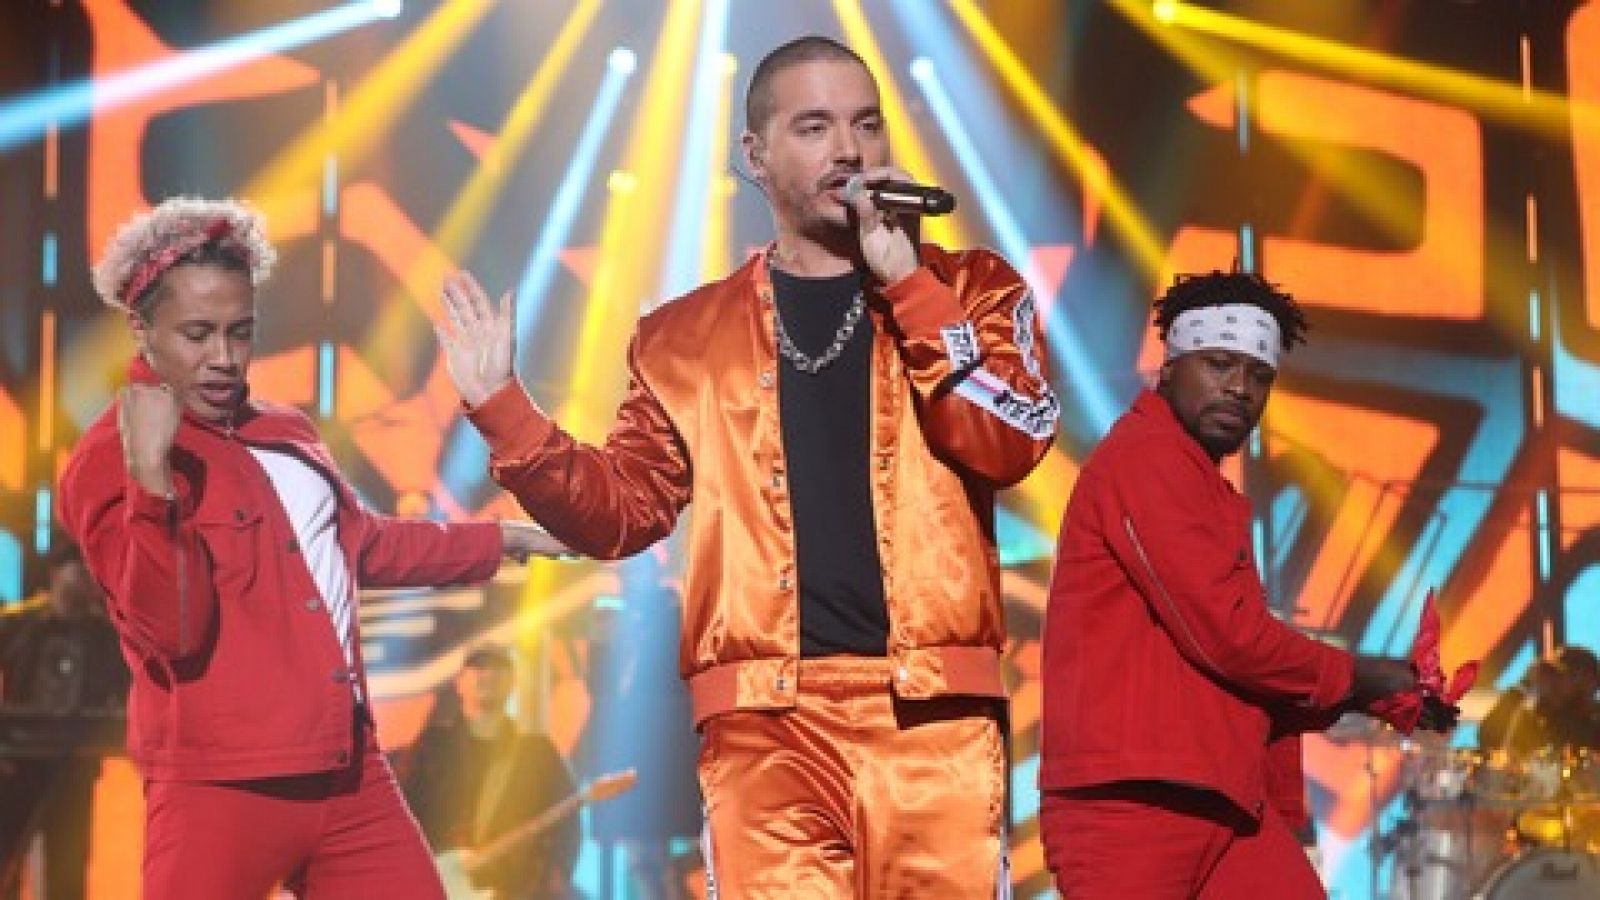 J. Balvin canta 'Machika' y 'Mi gente' - OT Gala Eurovisión